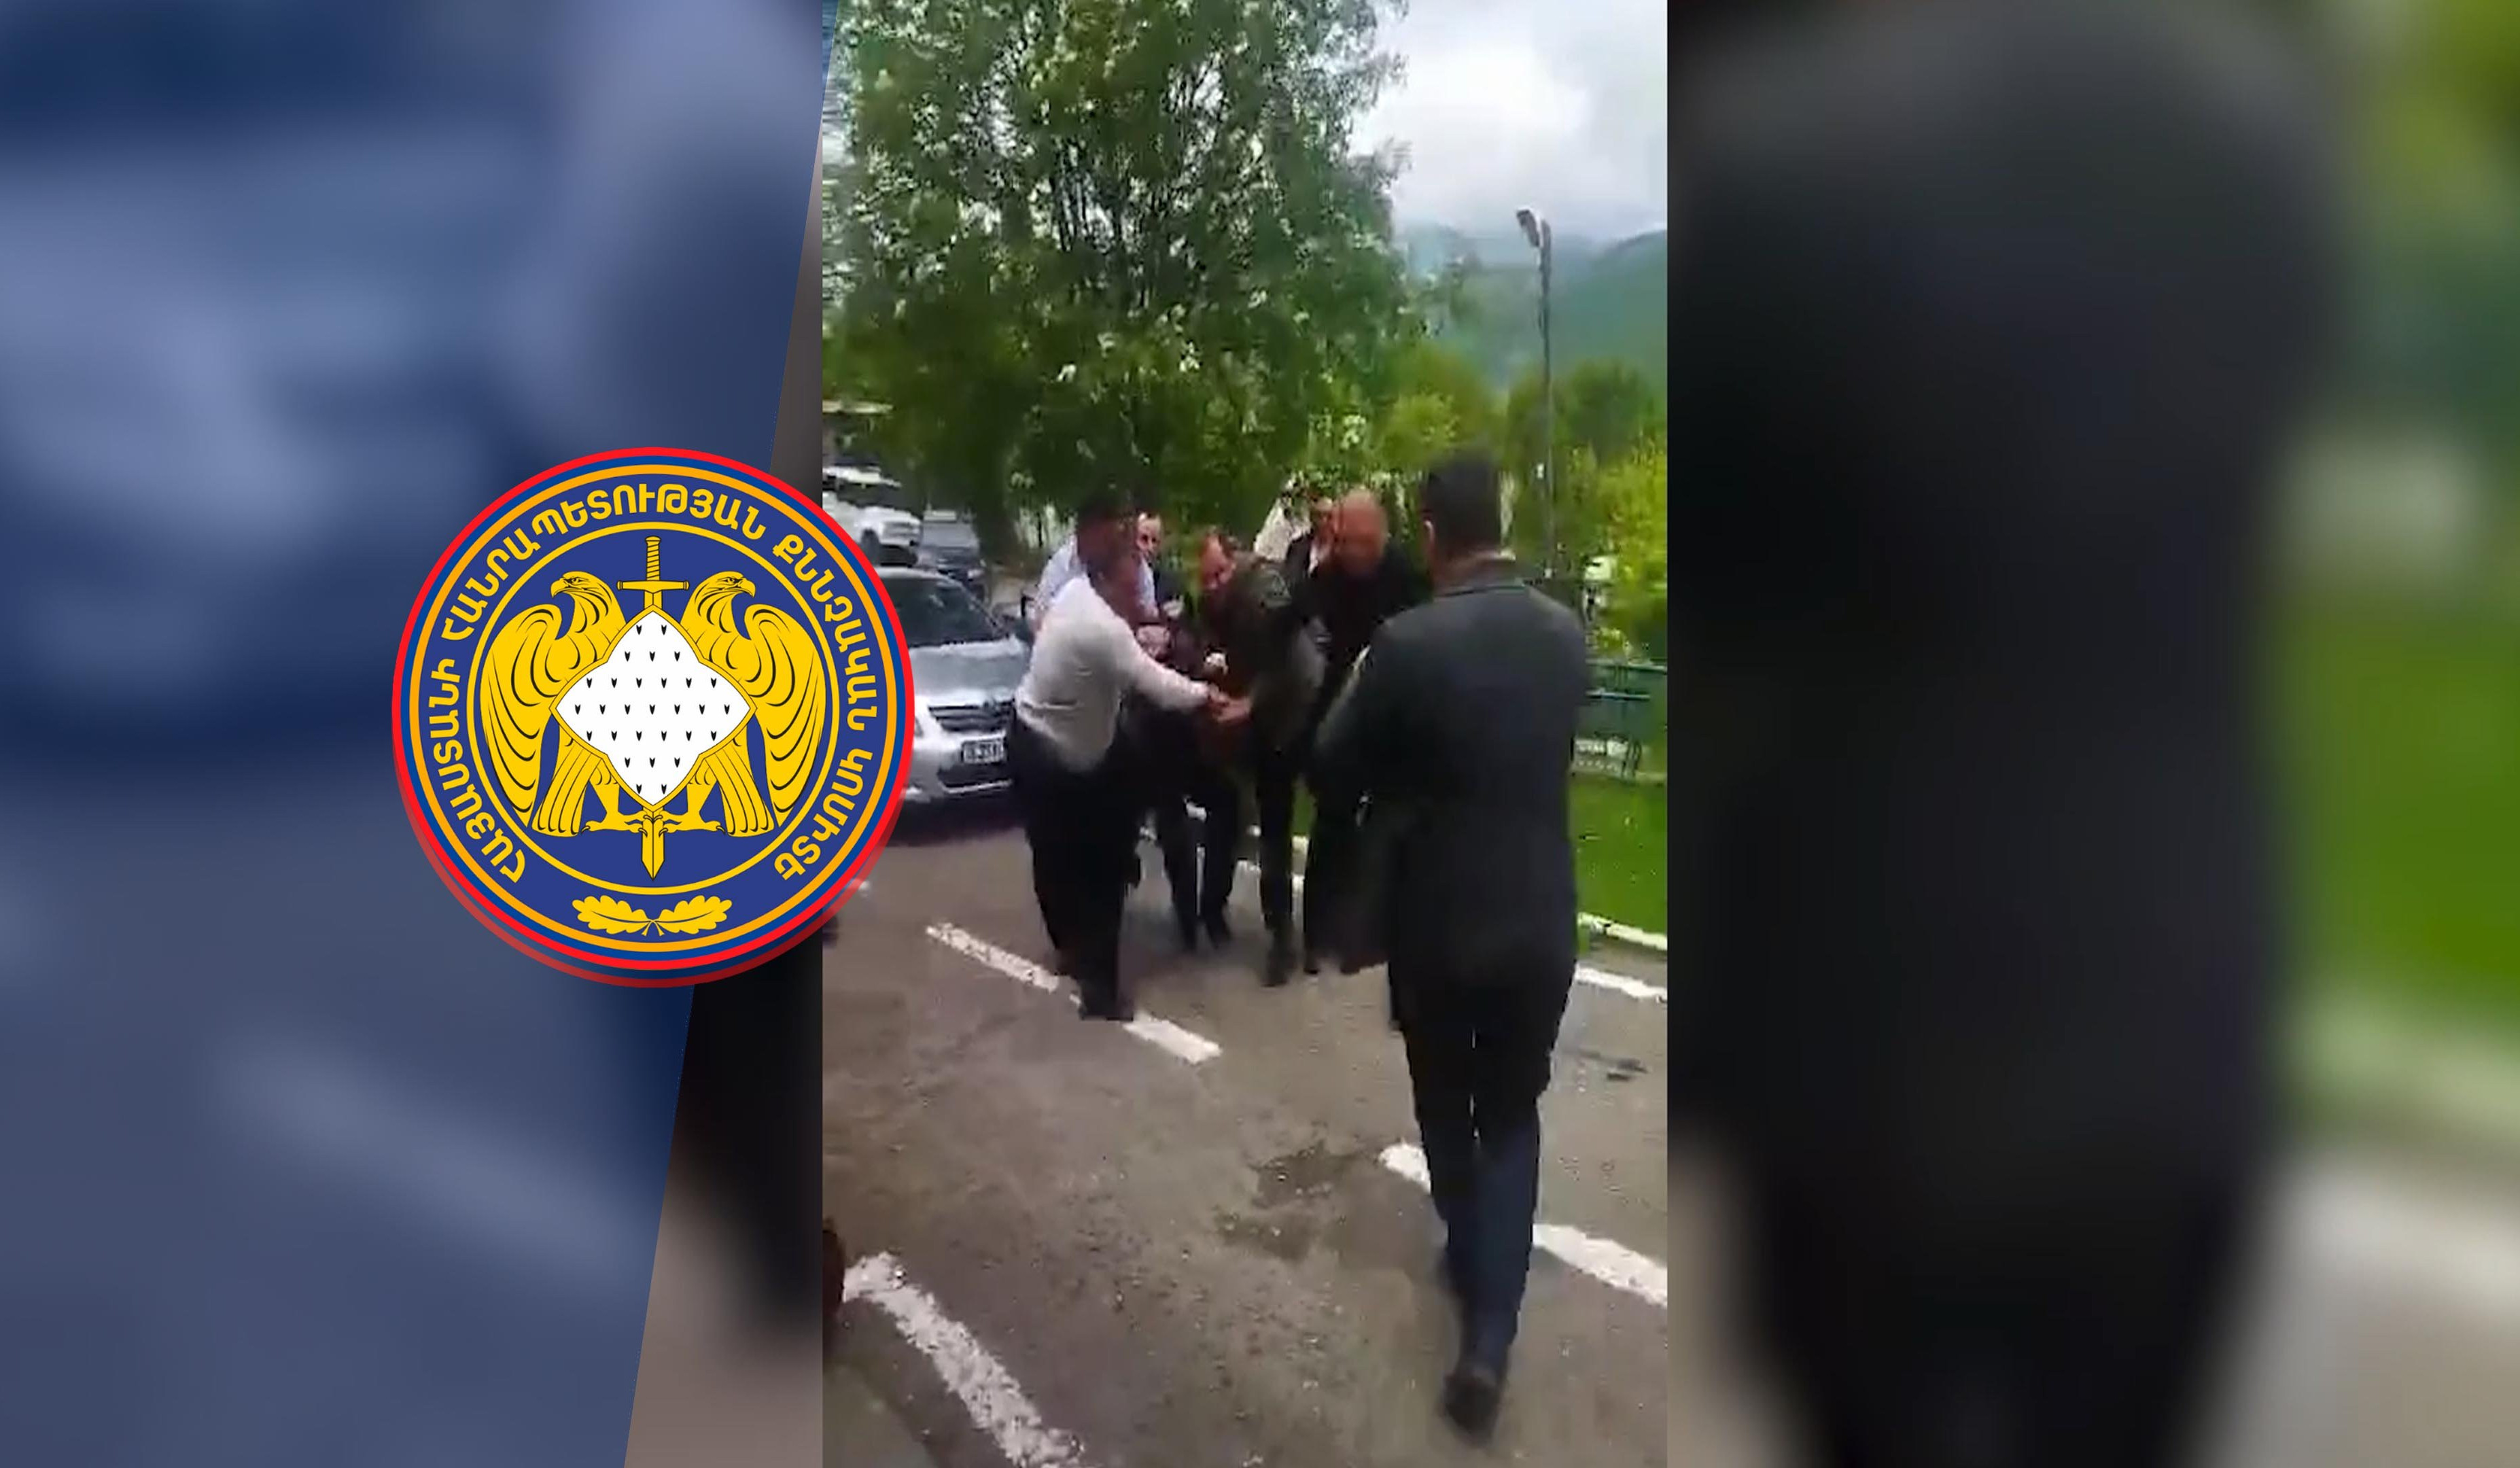 Տավուշում և Երևանում տեղի ունեցող ակցիաներին մասնակցելու համար նյութապես շահագրգռելու կասկածանքով ձերբակալվել է մեկ անձ